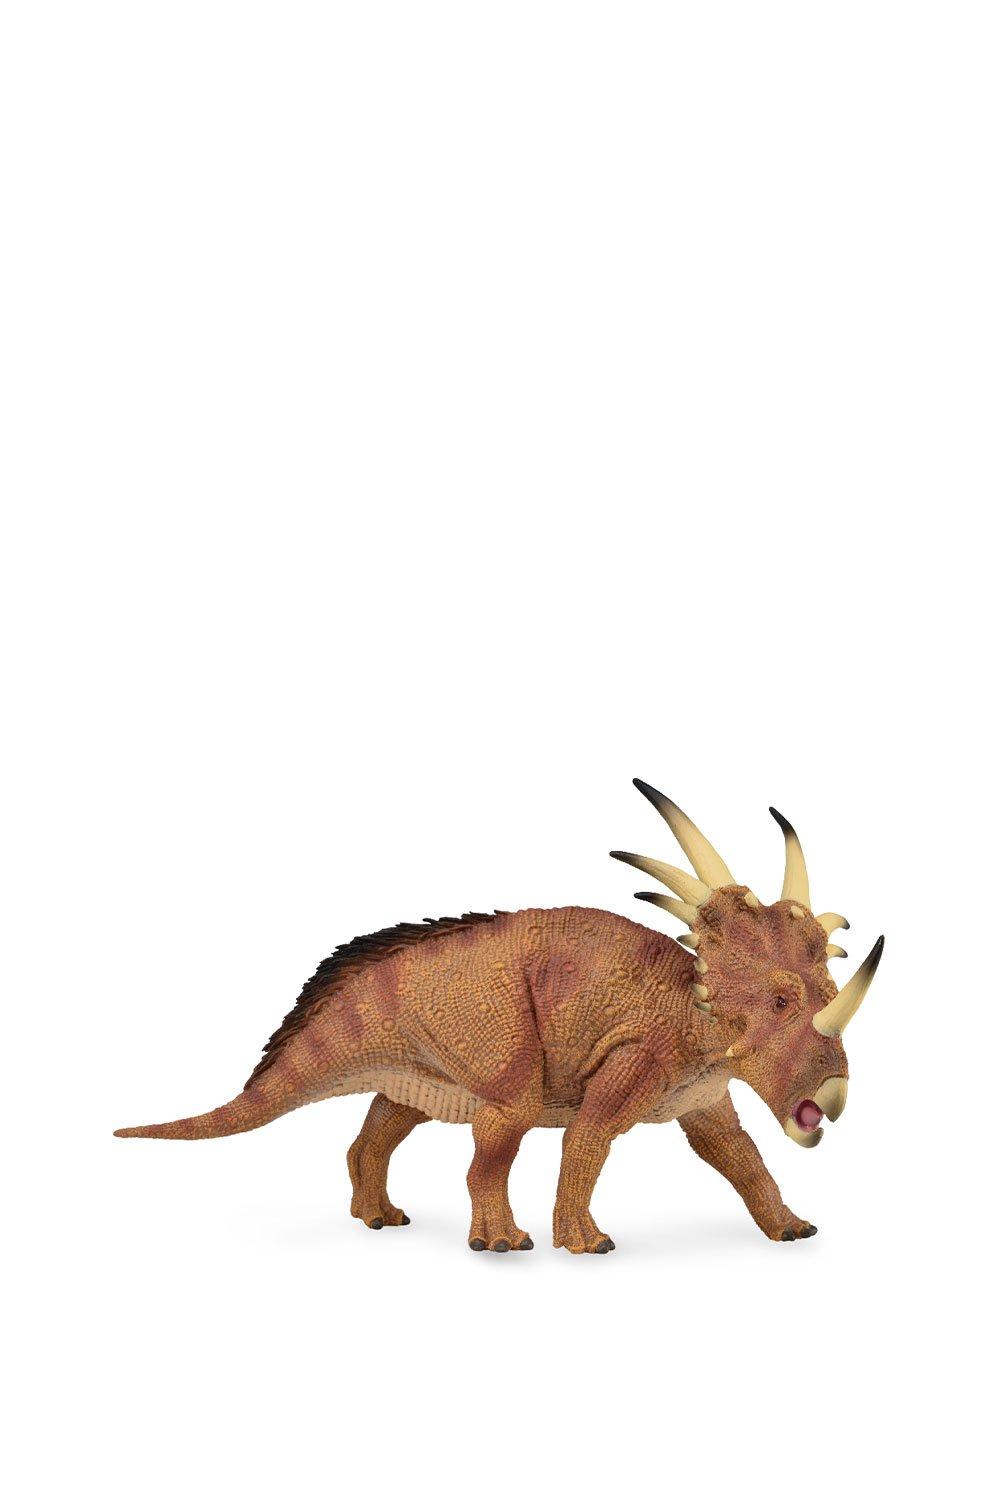 Styracosaurus Dinosaur Toy